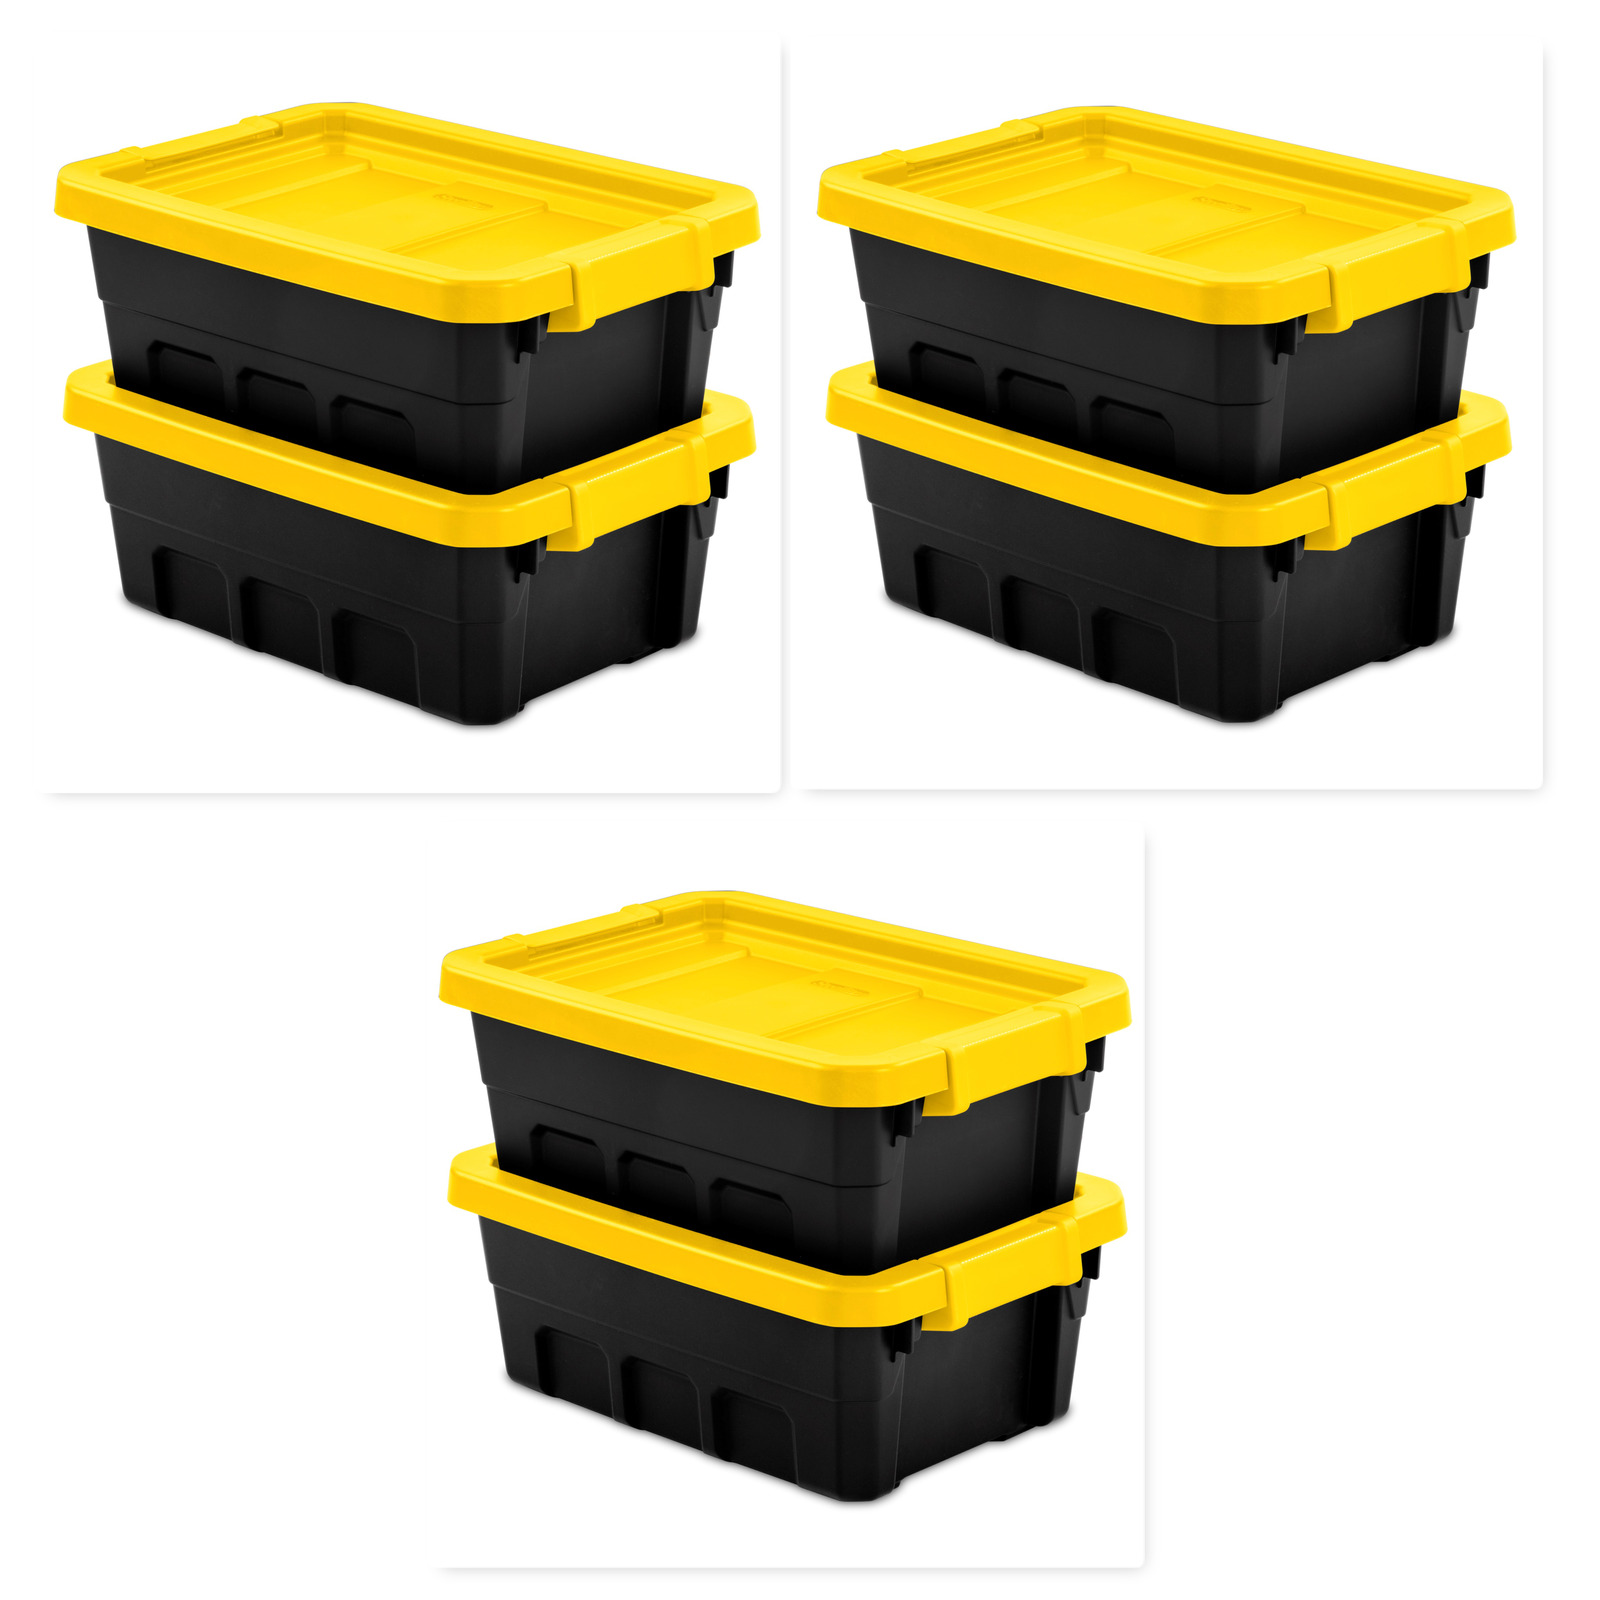 (Set of 6) Sterilite Plastic 4 Gallon Stacker Tote Box Storage Container Yellow